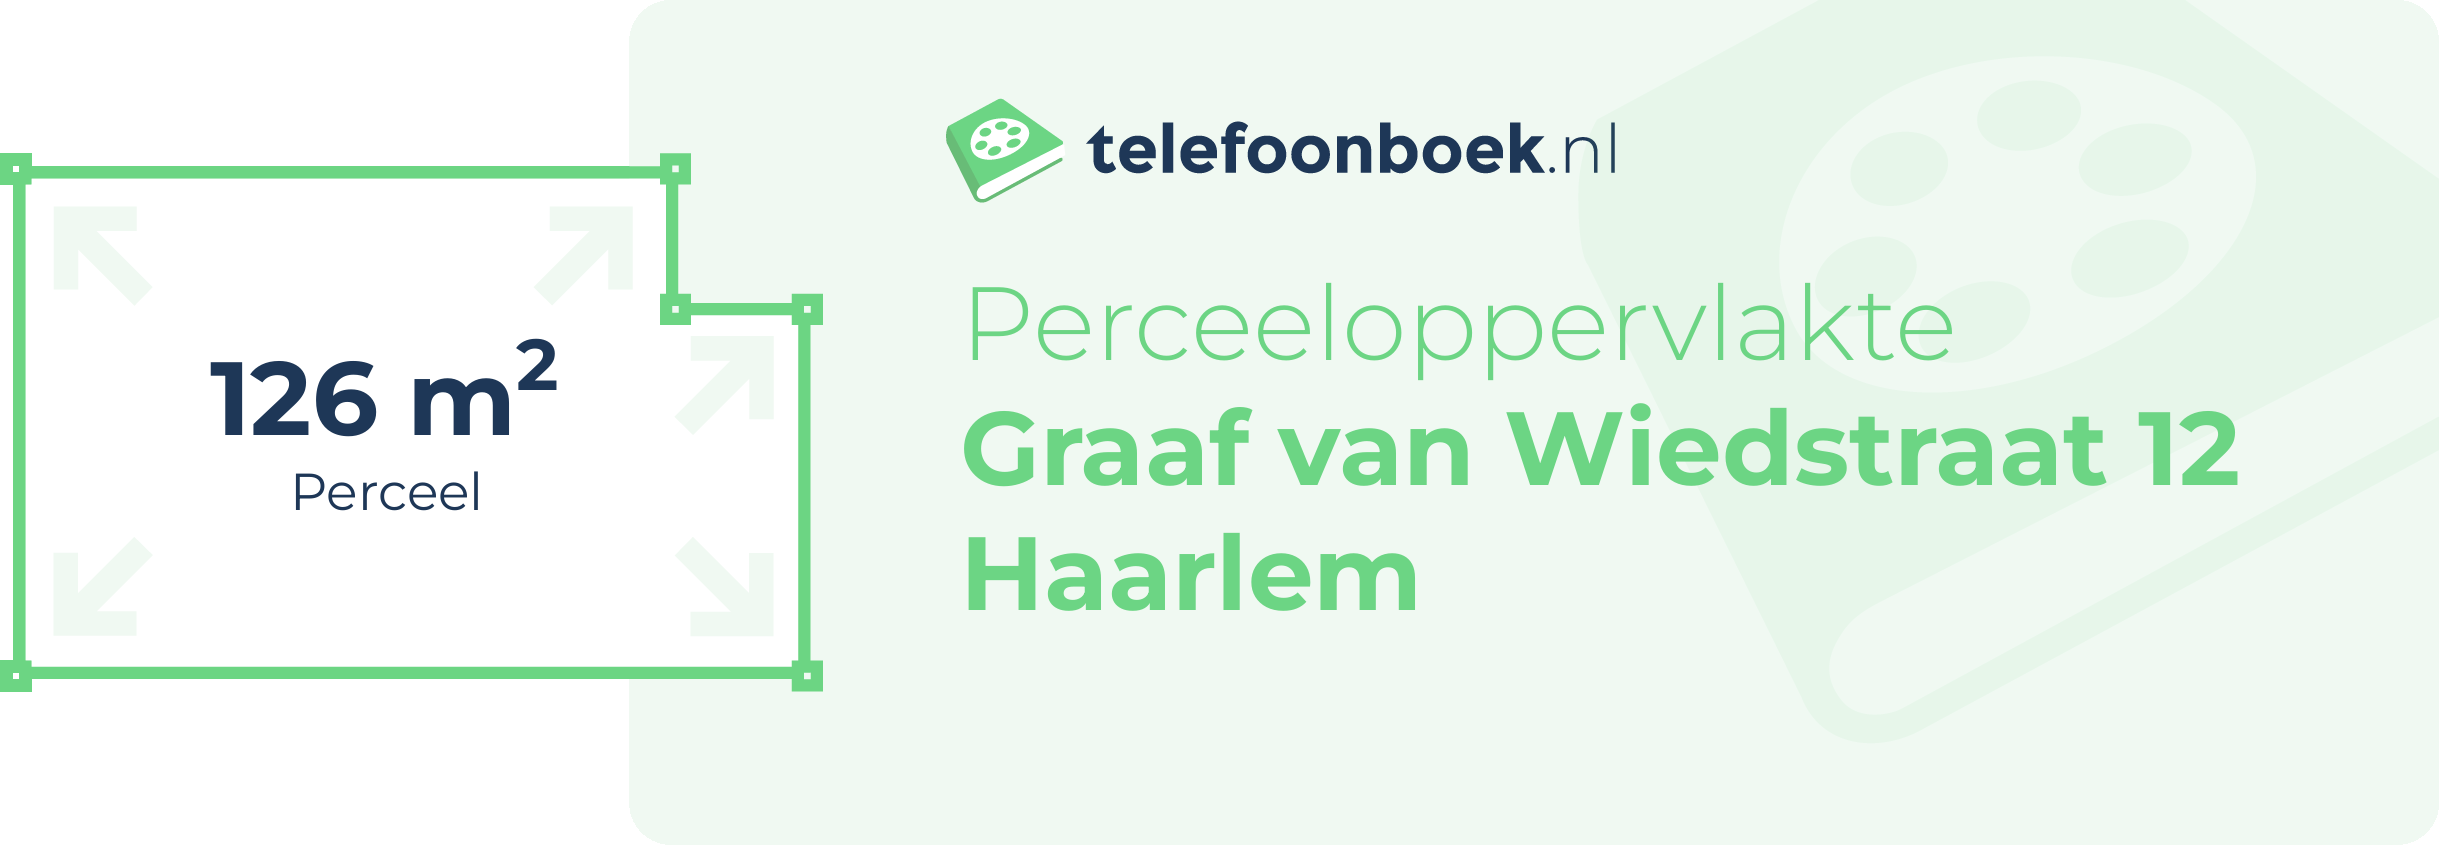 Perceeloppervlakte Graaf Van Wiedstraat 12 Haarlem